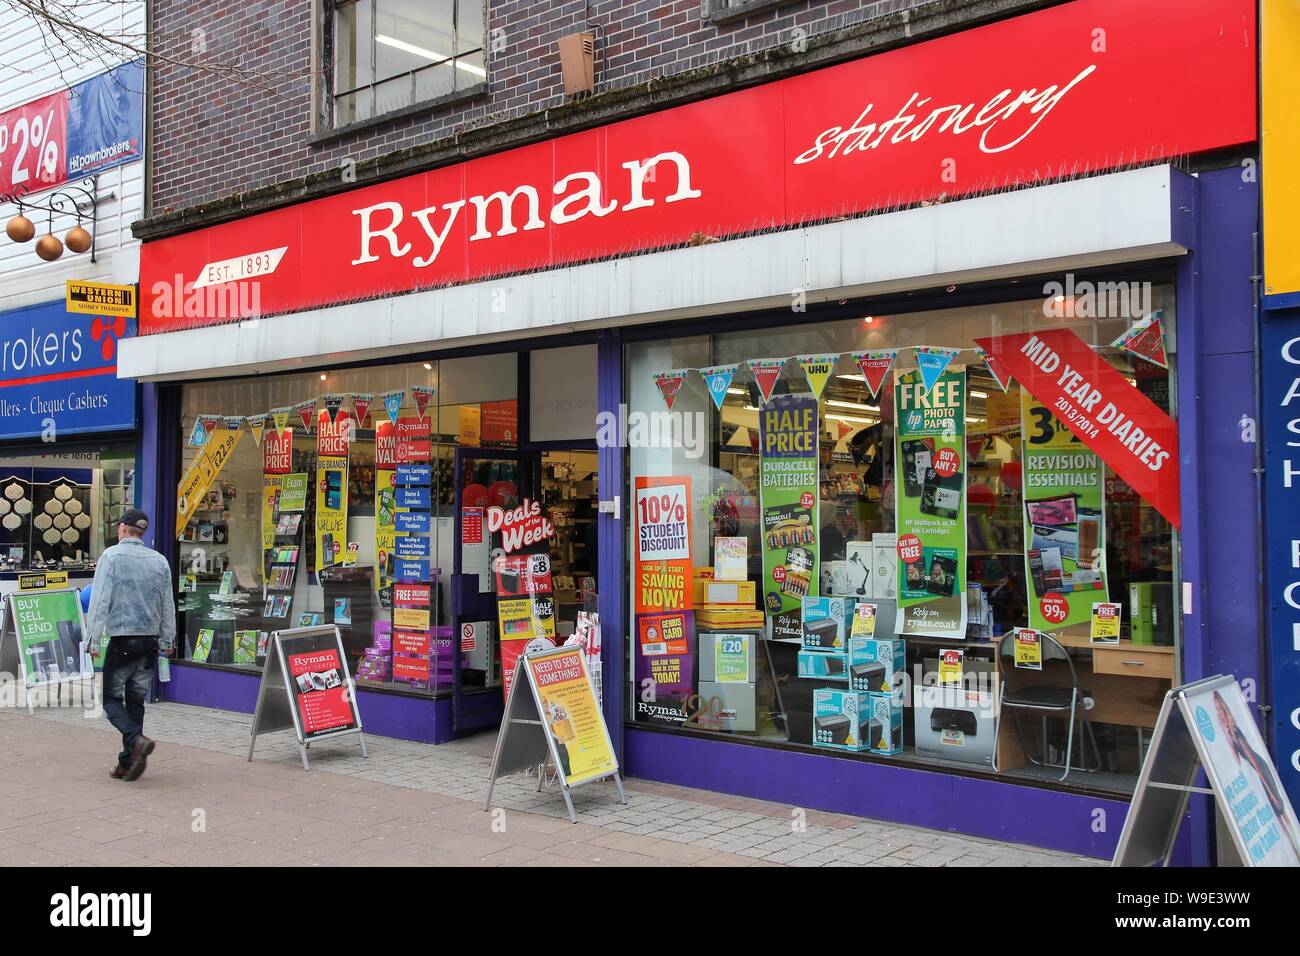 BOLTON, ANGLETERRE - 23 avril 2013 : personne marche par Ryman papeterie à Bolton, au Royaume-Uni. Ryman est une papeterie et fournitures de bureau au Royaume-Uni avec plus de détail Banque D'Images